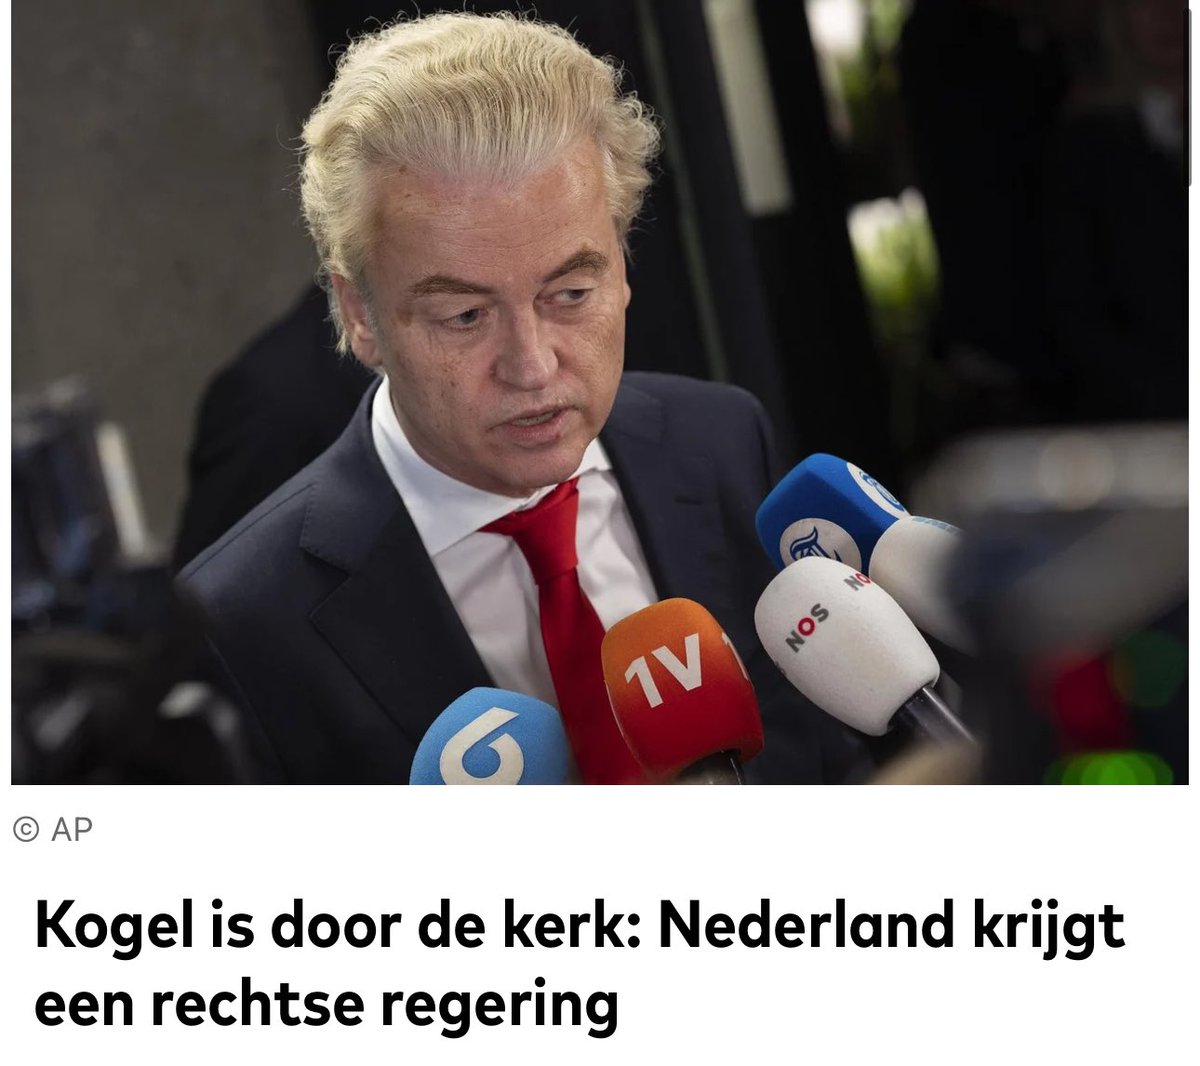 Proficiat, Geert Wilders!  👏🏼🇳🇱
Dit is de mooiste dag van het jaar. Een overwinning van de democratie en hoop voor mensen die geloven in échte verandering. Na Nederland is het op 9 juni de beurt aan Vlaanderen!